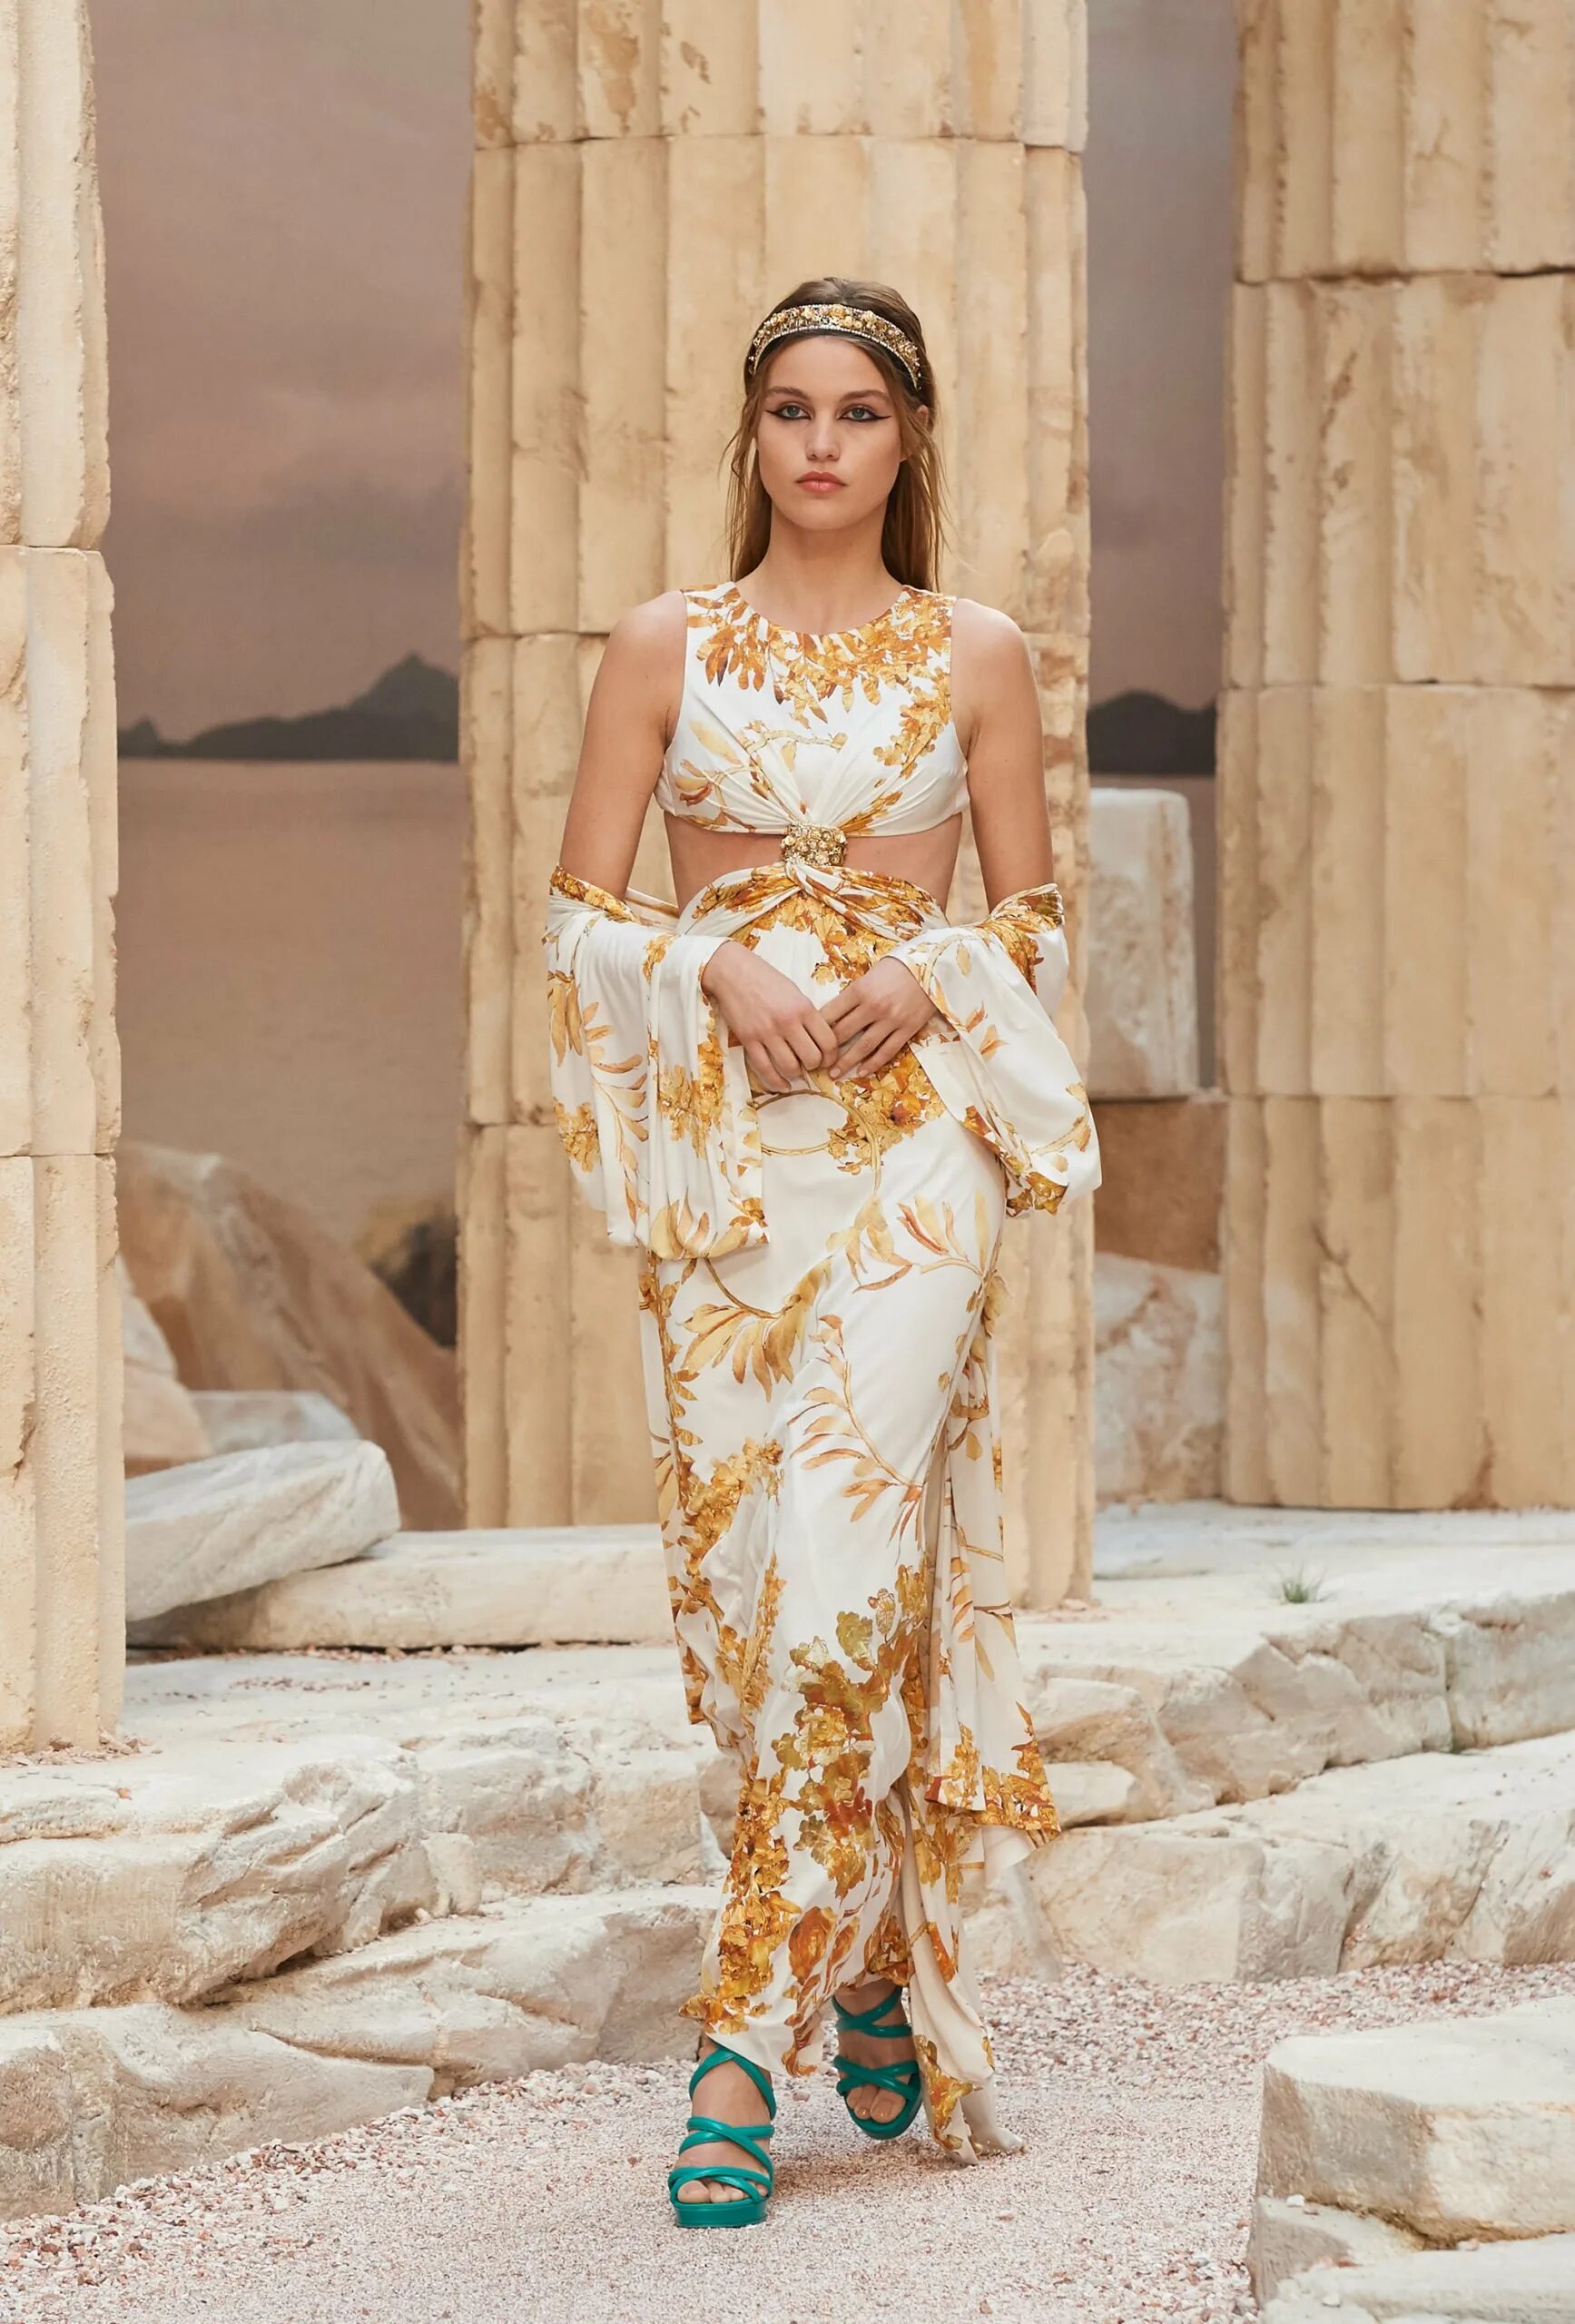 Греческие модели. Круизная коллекция Шанель 2018. Платье в римском стиле. Греческий стиль в одежде современный. Образ греческой Богини.